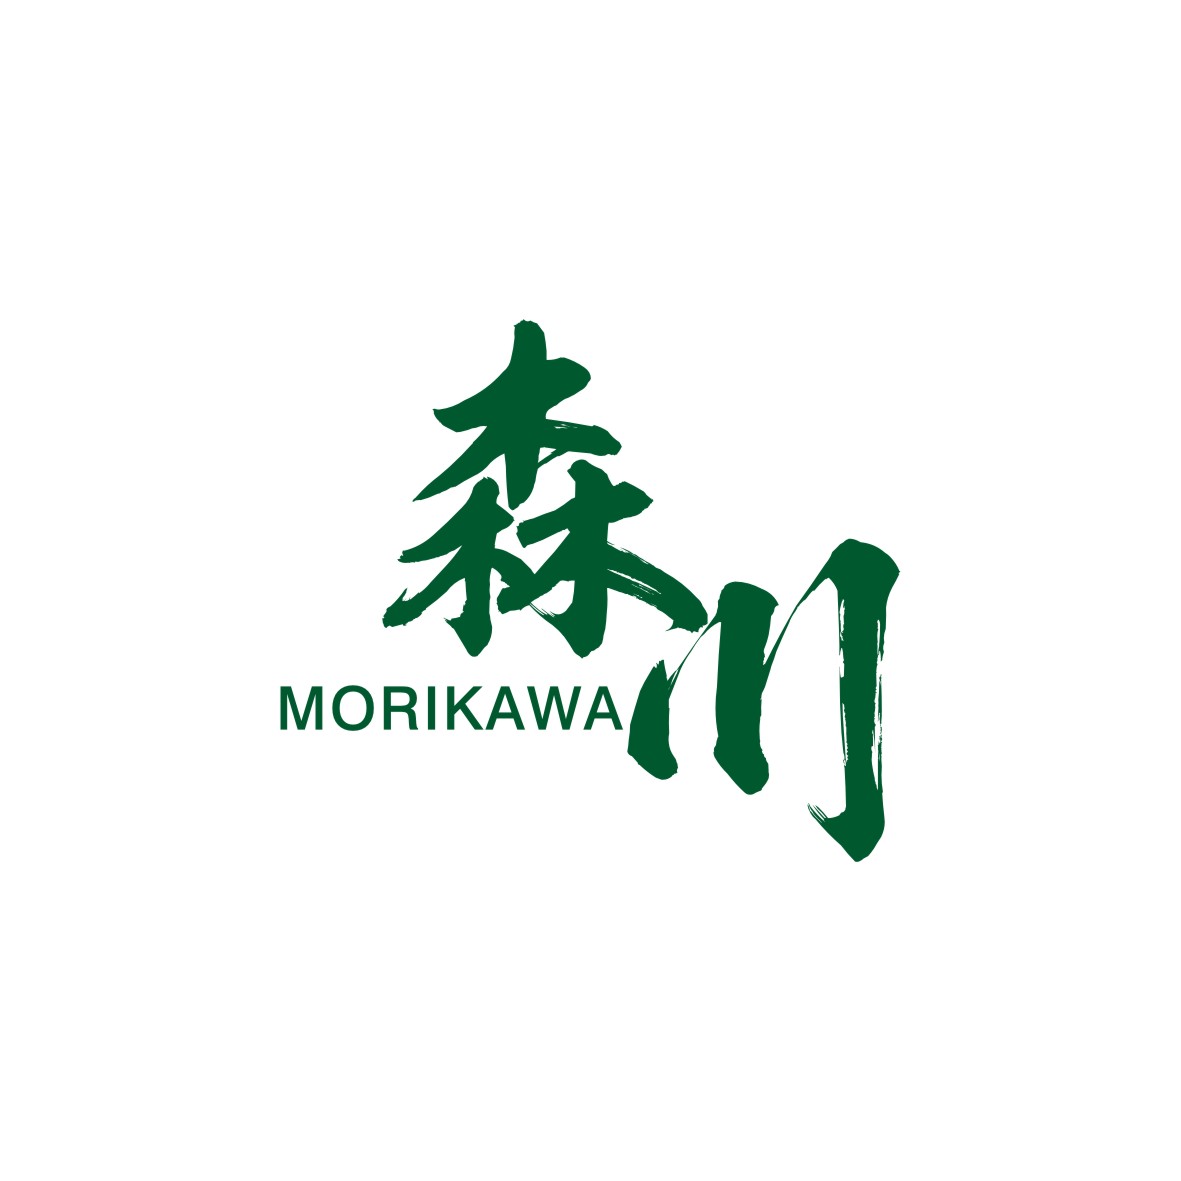 广州欢庆商贸有限公司商标森川 MORIKAWA（34类）商标转让费用及联系方式